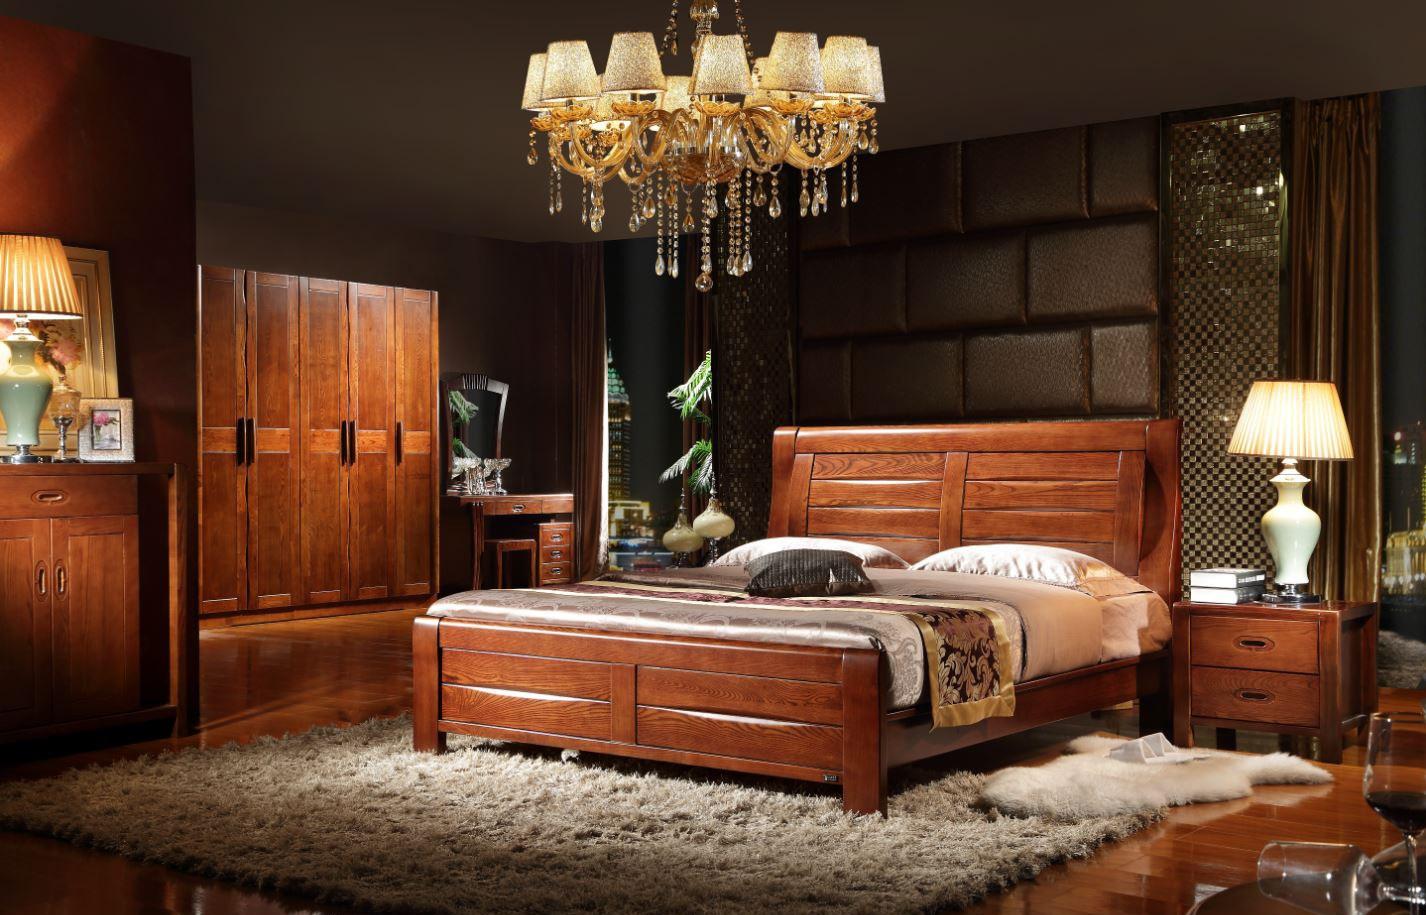 Wooden мебель. Спальня из дерева. Спальня из натурального дерева. Мебель для спальни. Спальня мебель из темного дерева.